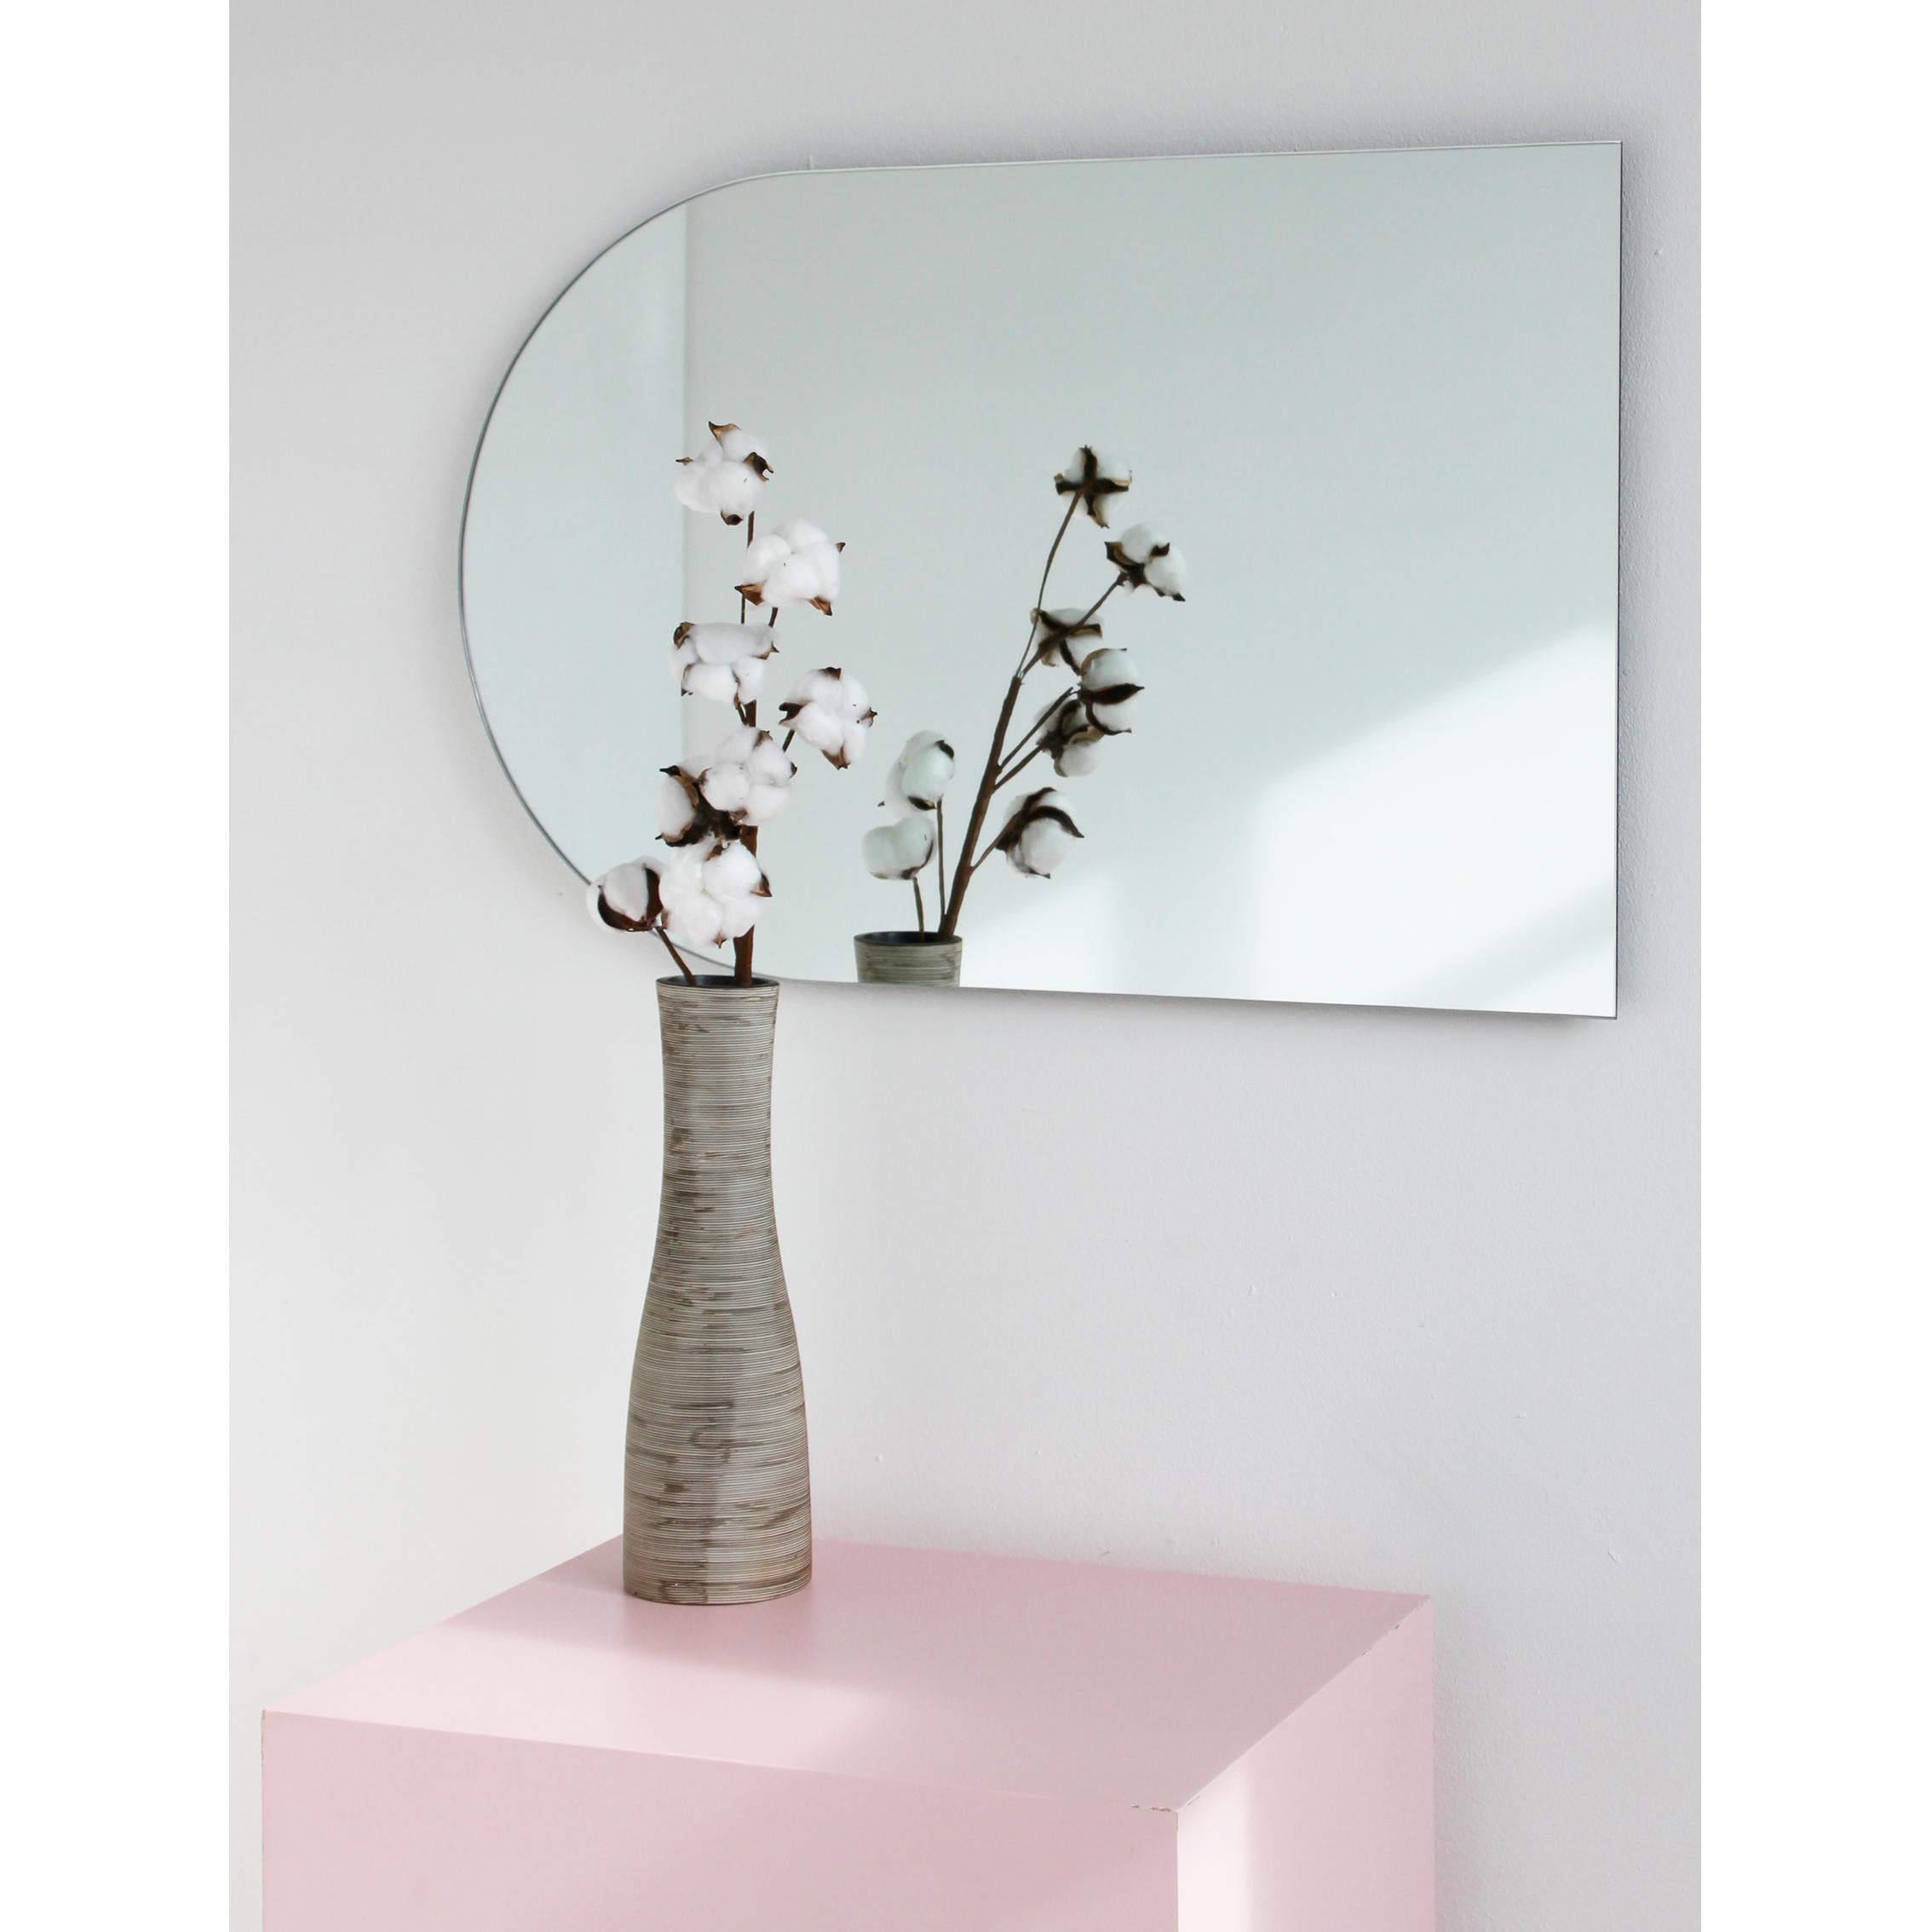 Minimalistischer, bogenförmiger, rahmenloser Spiegel, der in 4 verschiedenen Positionen aufgehängt werden kann. Hochwertiges Design, das dafür sorgt, dass der Spiegel perfekt parallel zur Wand steht. Entworfen und hergestellt in London,